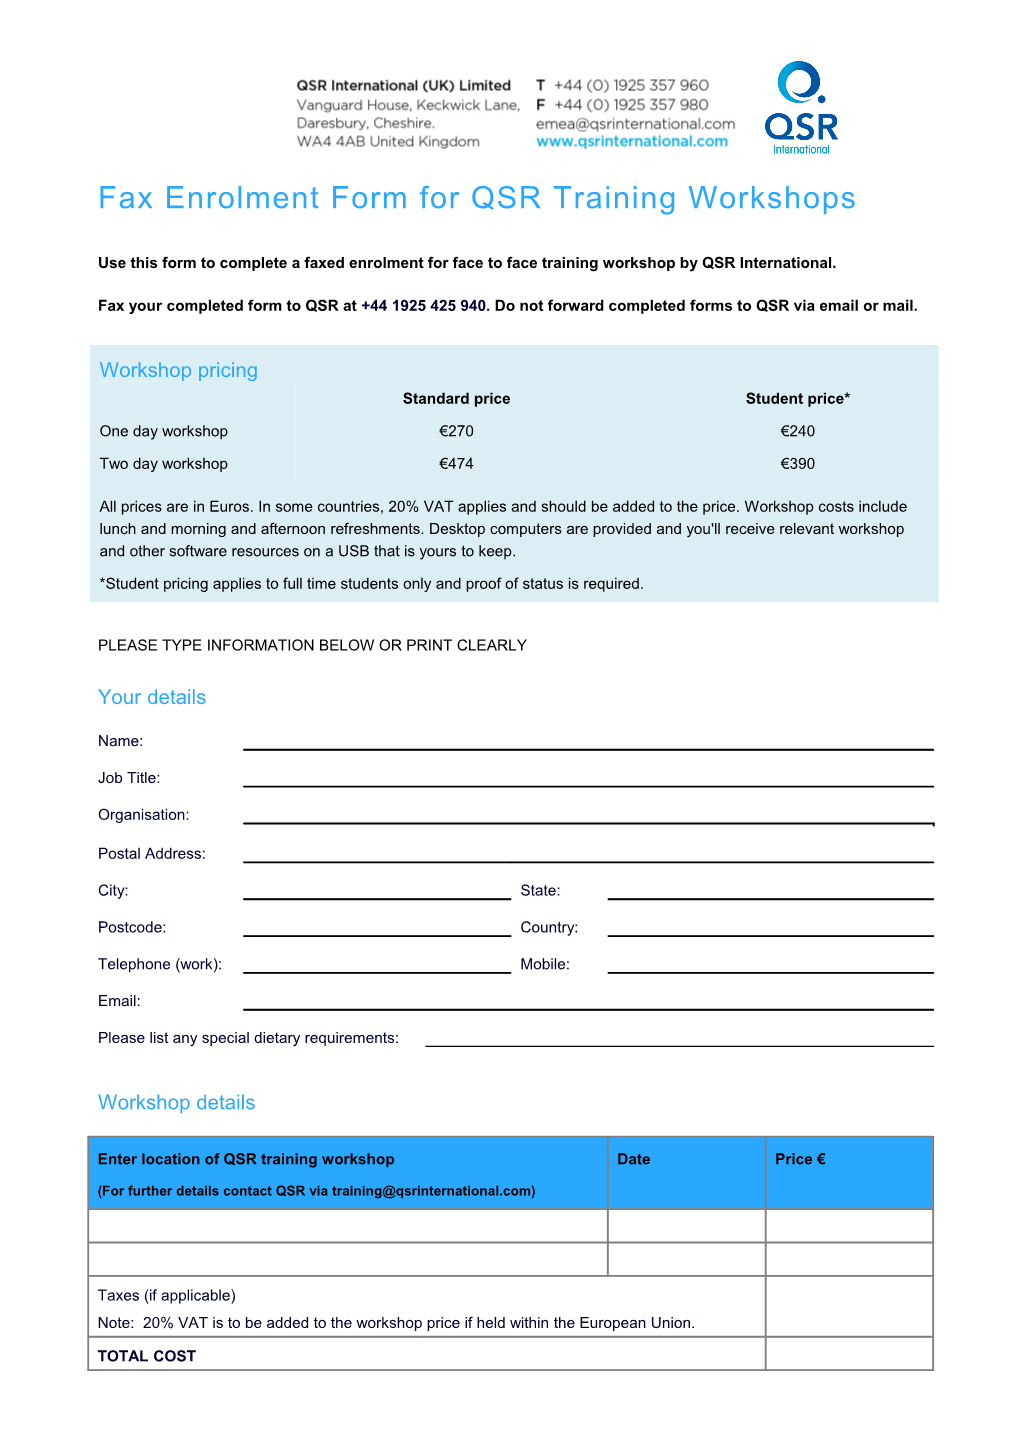 Fax Enrolment Form for QSR Workshop (EU)